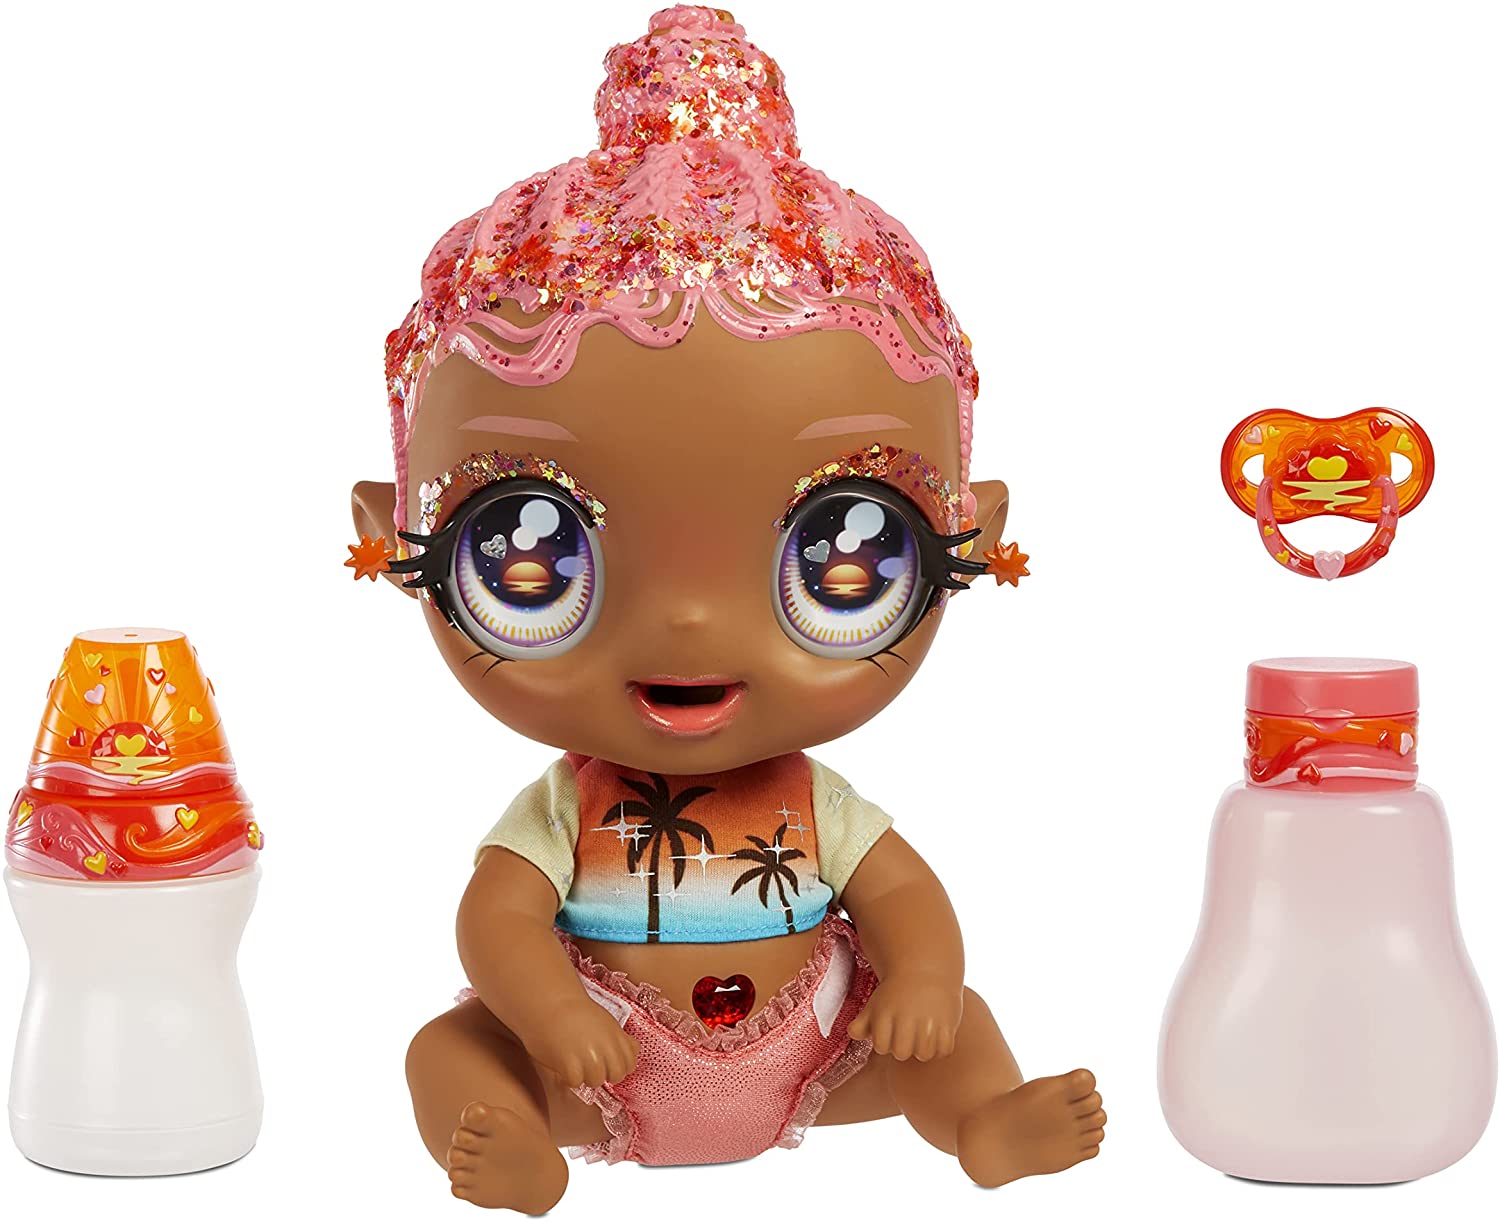 Glitter Babyz: New baby dolls grom MGA 